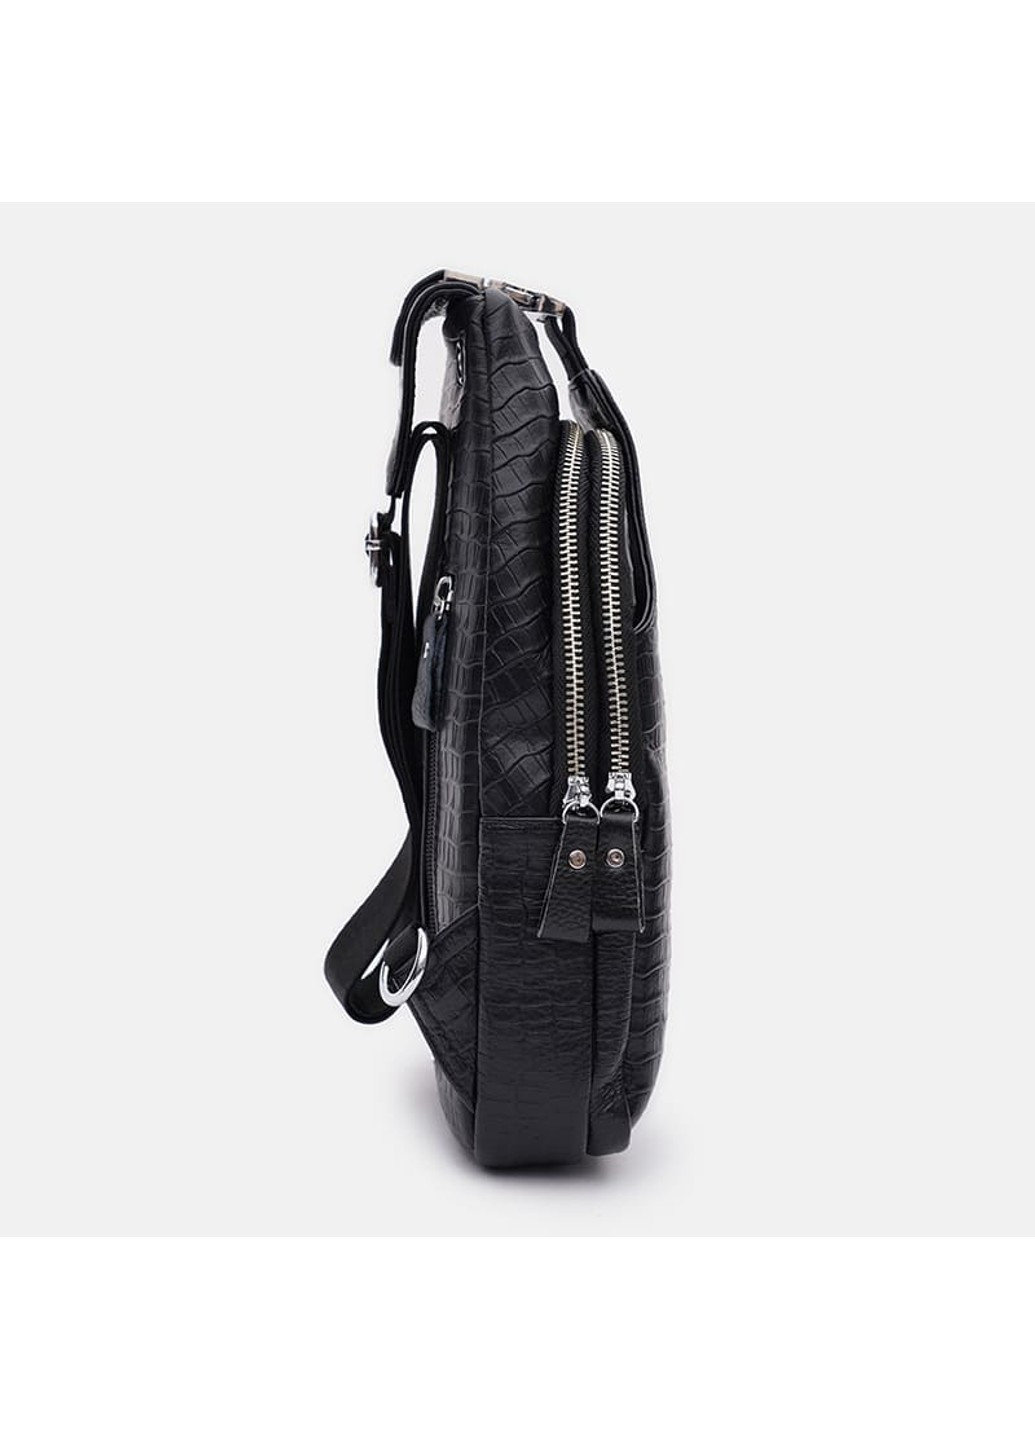 Мужской кожаный рюкзак K15015bl-black Keizer (271665099)